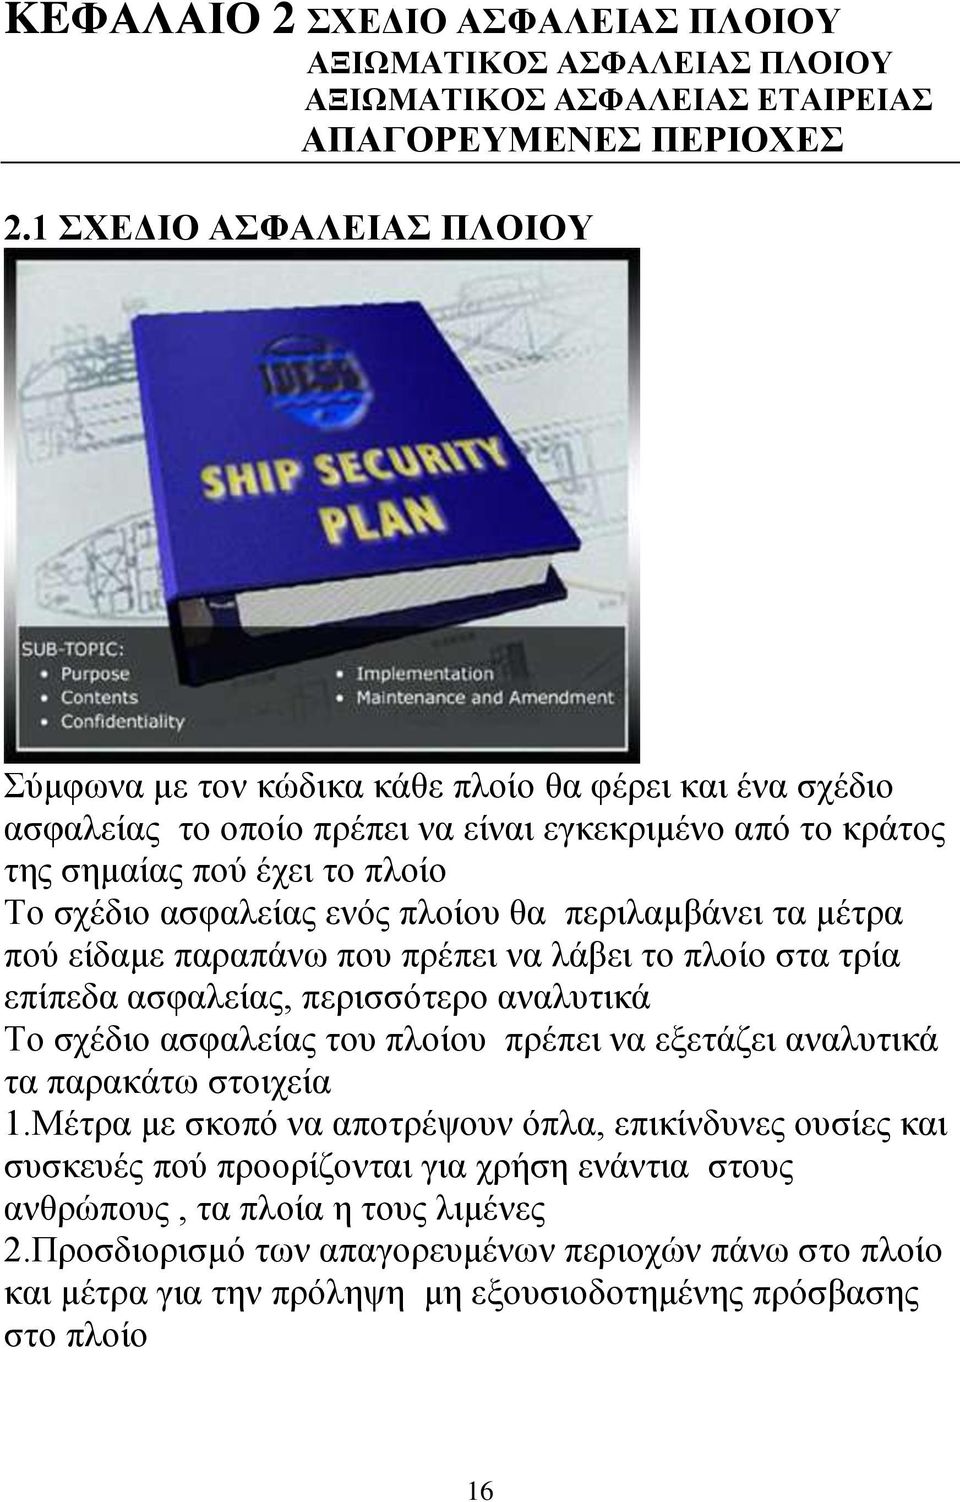 πλοίου θα περιλαμβάνει τα μέτρα πού είδαμε παραπάνω που πρέπει να λάβει το πλοίο στα τρία επίπεδα ασφαλείας, περισσότερο αναλυτικά Το σχέδιο ασφαλείας του πλοίου πρέπει να εξετάζει αναλυτικά τα